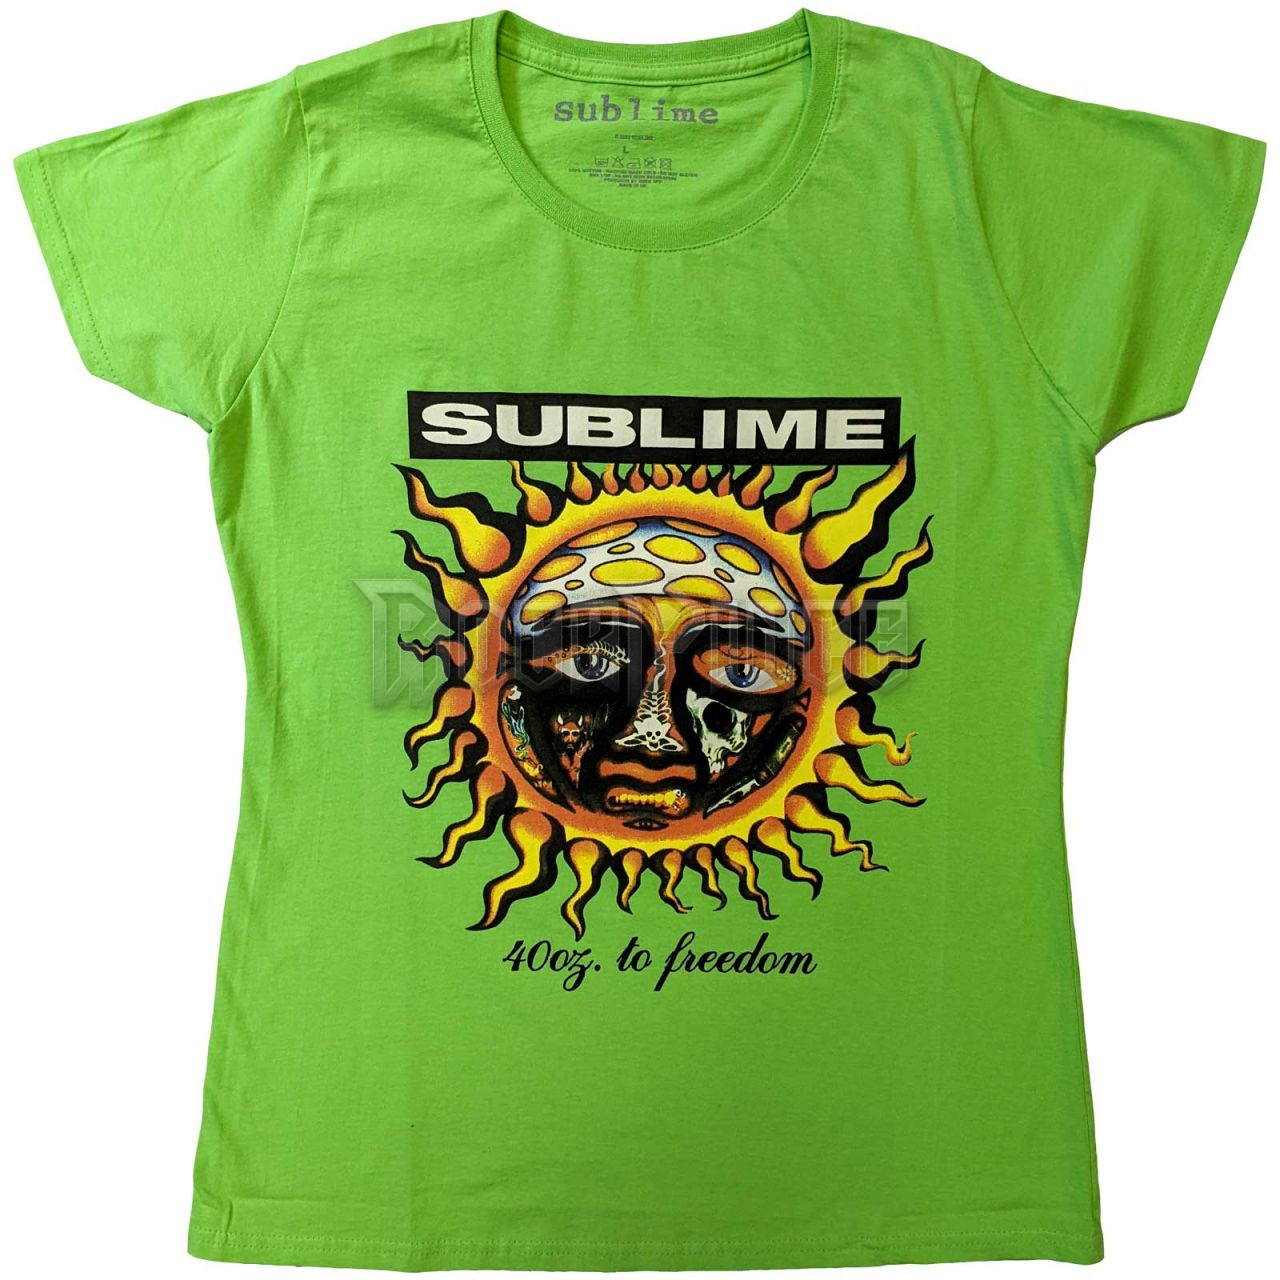 Sublime - 40oz To Freedom - női póló - SUBTS14LGR